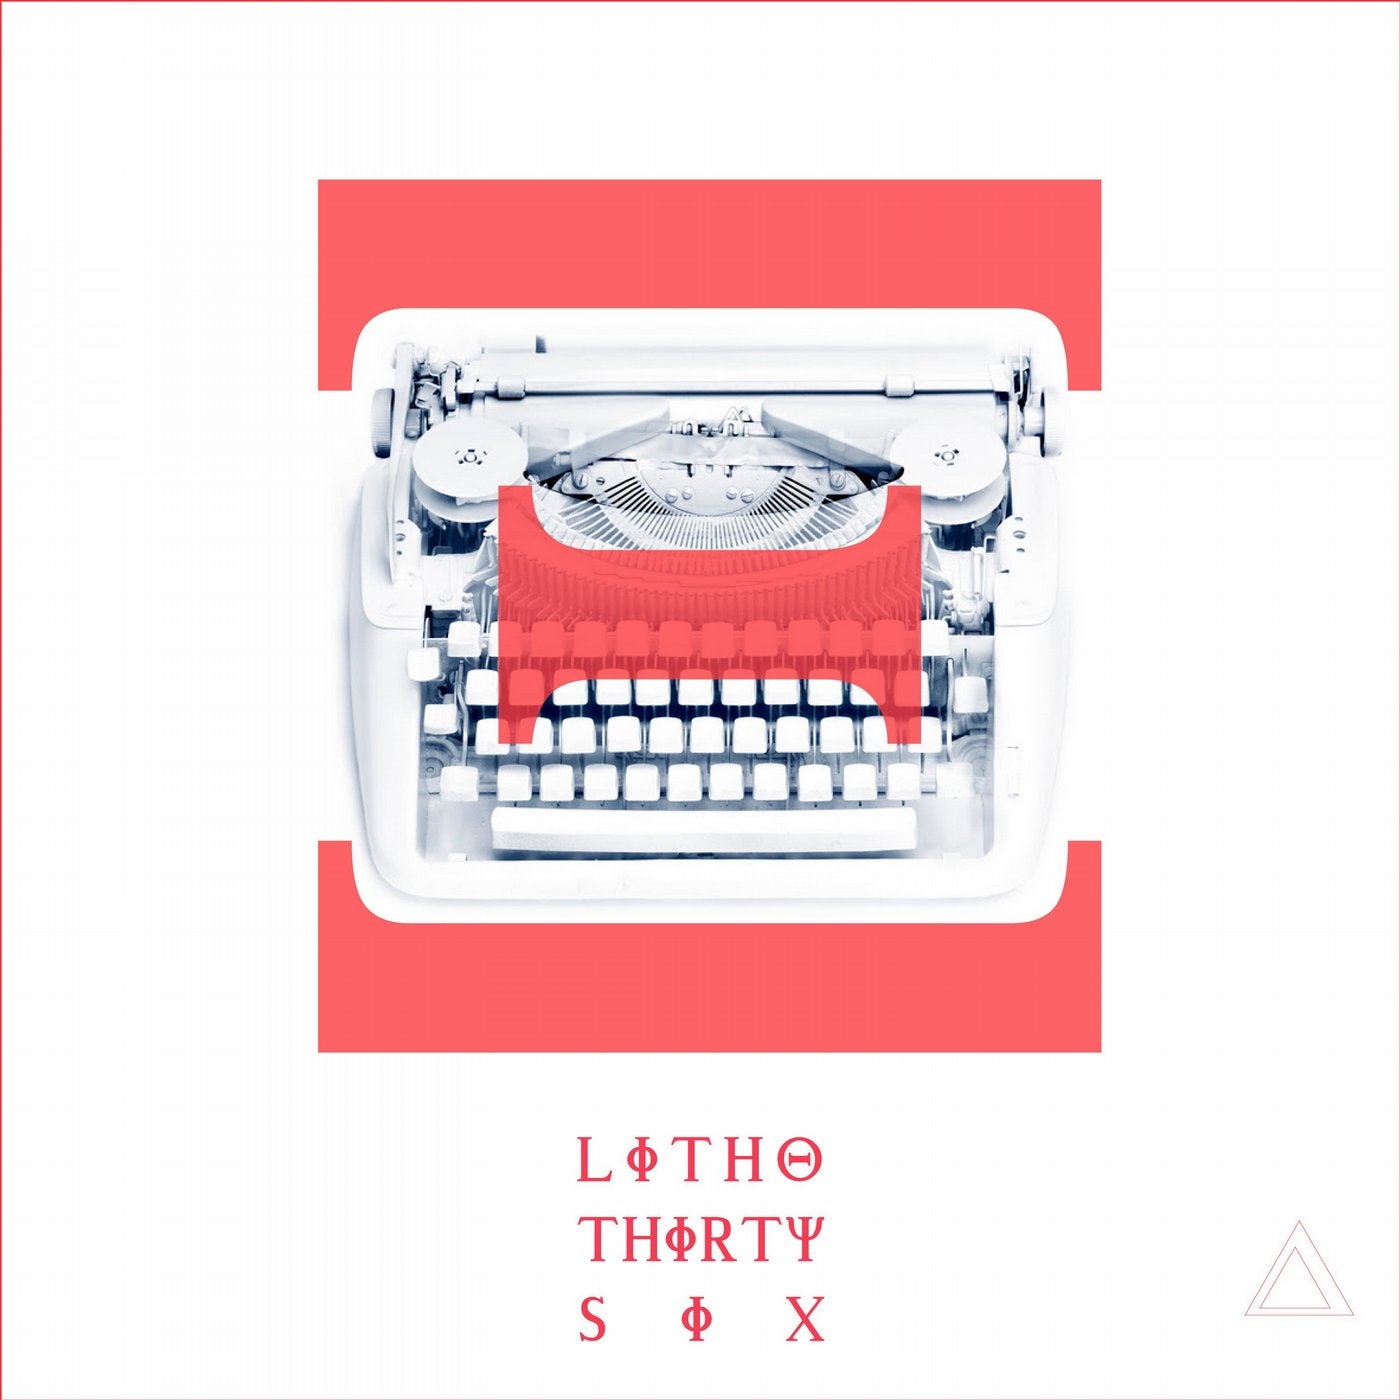 Litho Thirtysix